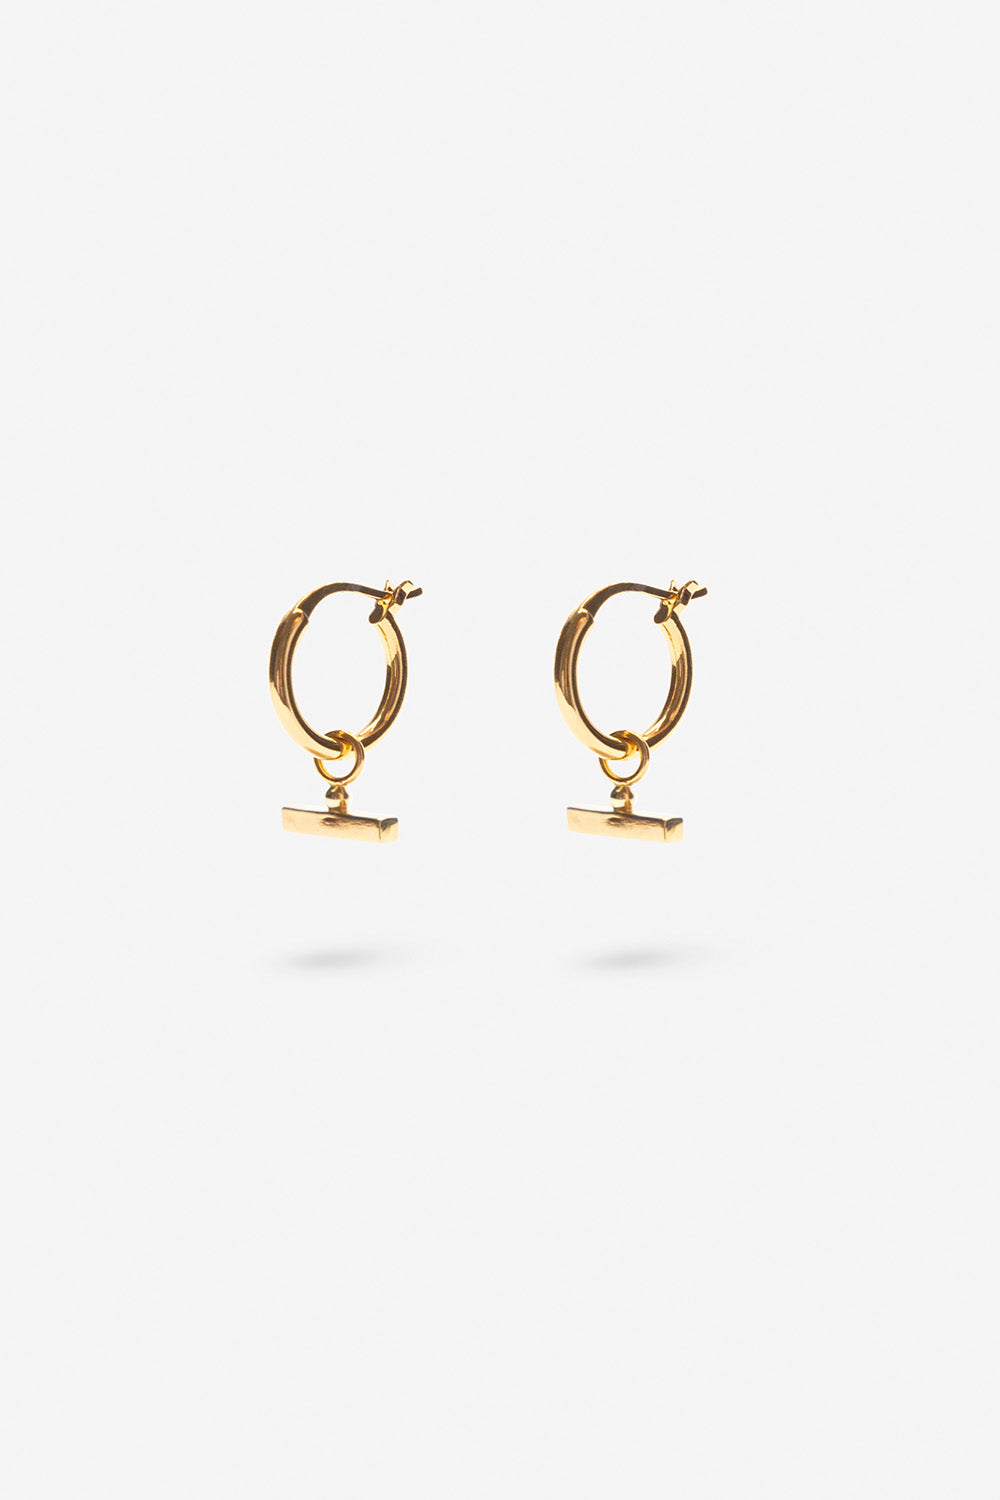 Flash Jewellery Chloe Sleeper Hoop Earrings in 14k Gold Vermeil